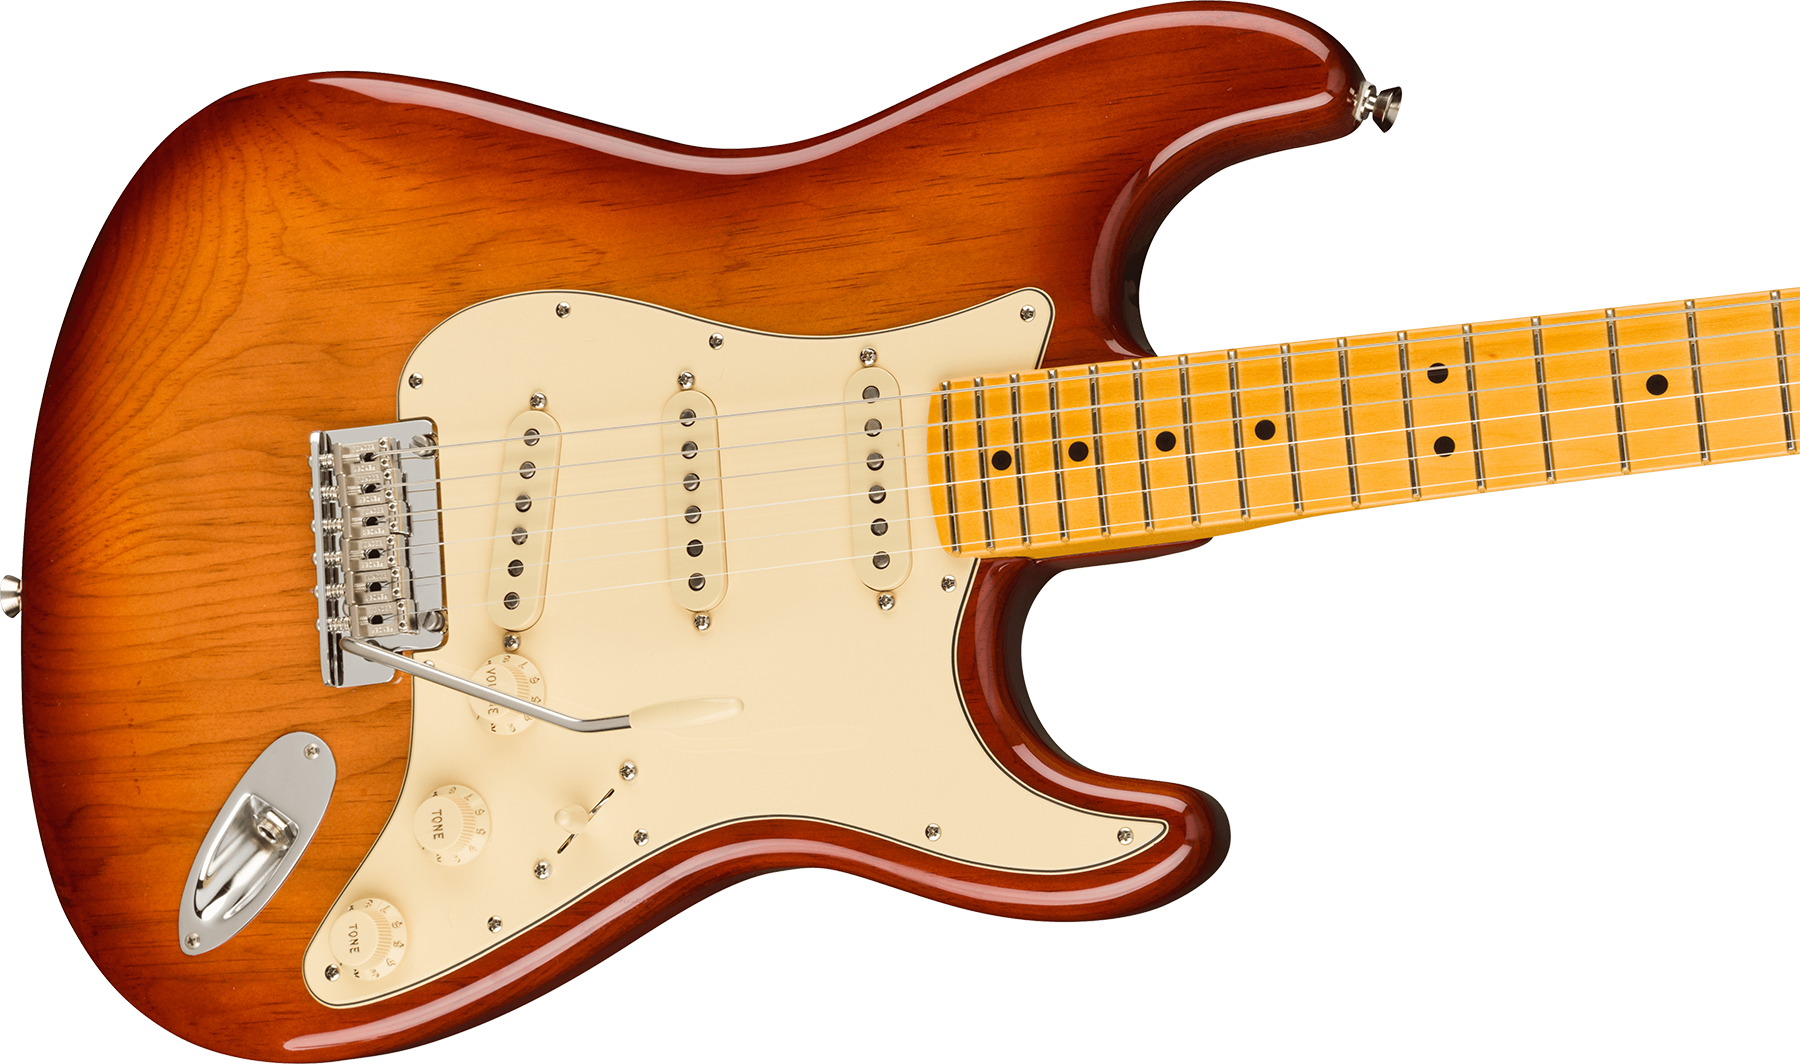 Fender Strat American Professional Ii Usa Mn - Sienna Sunburst - Elektrische gitaar in Str-vorm - Variation 2